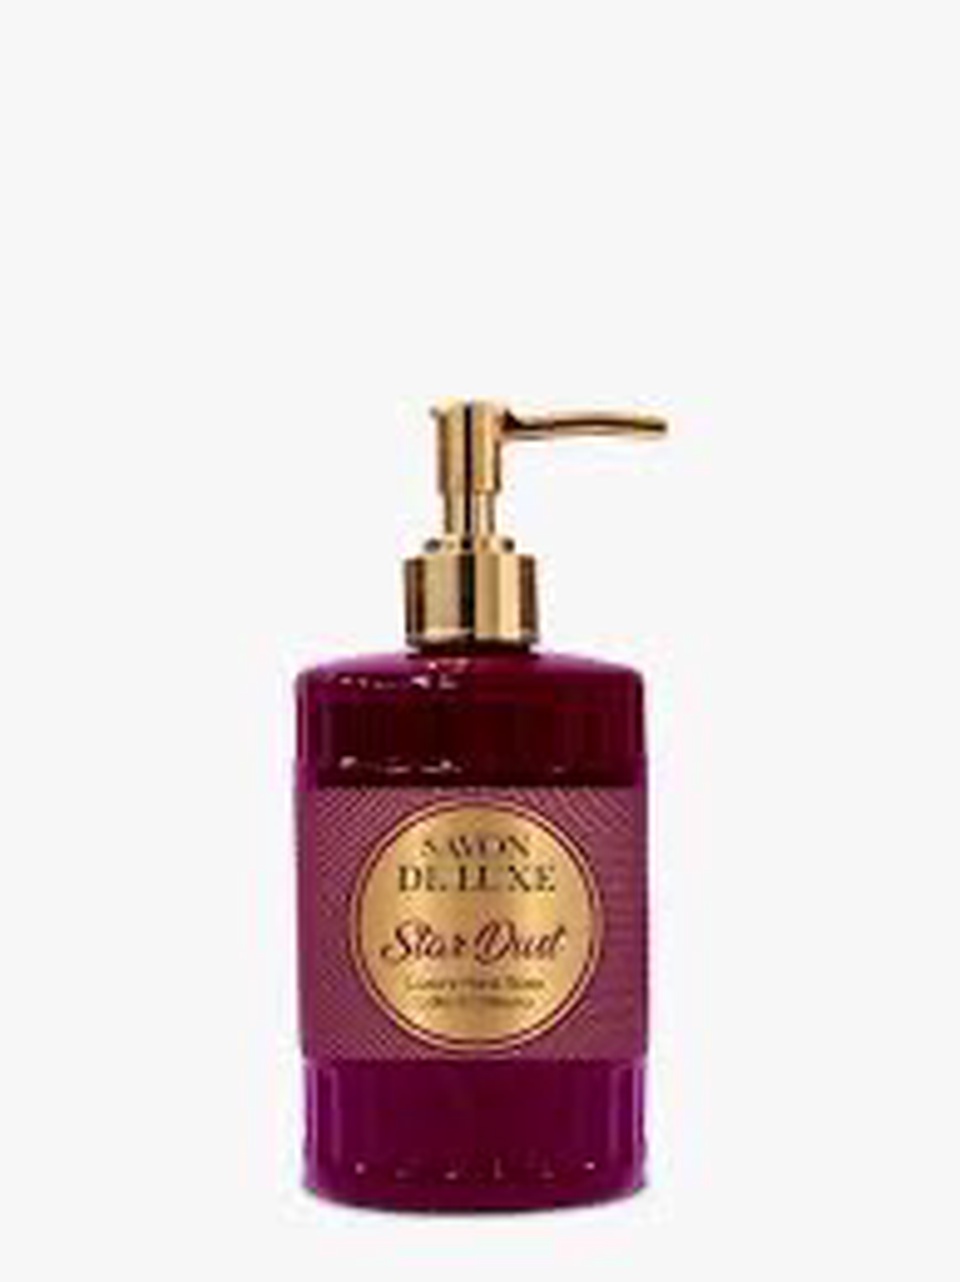 Savon De Luxe Жидкое мыло «Звездная пыль» - 300 ₽, заказать онлайн.